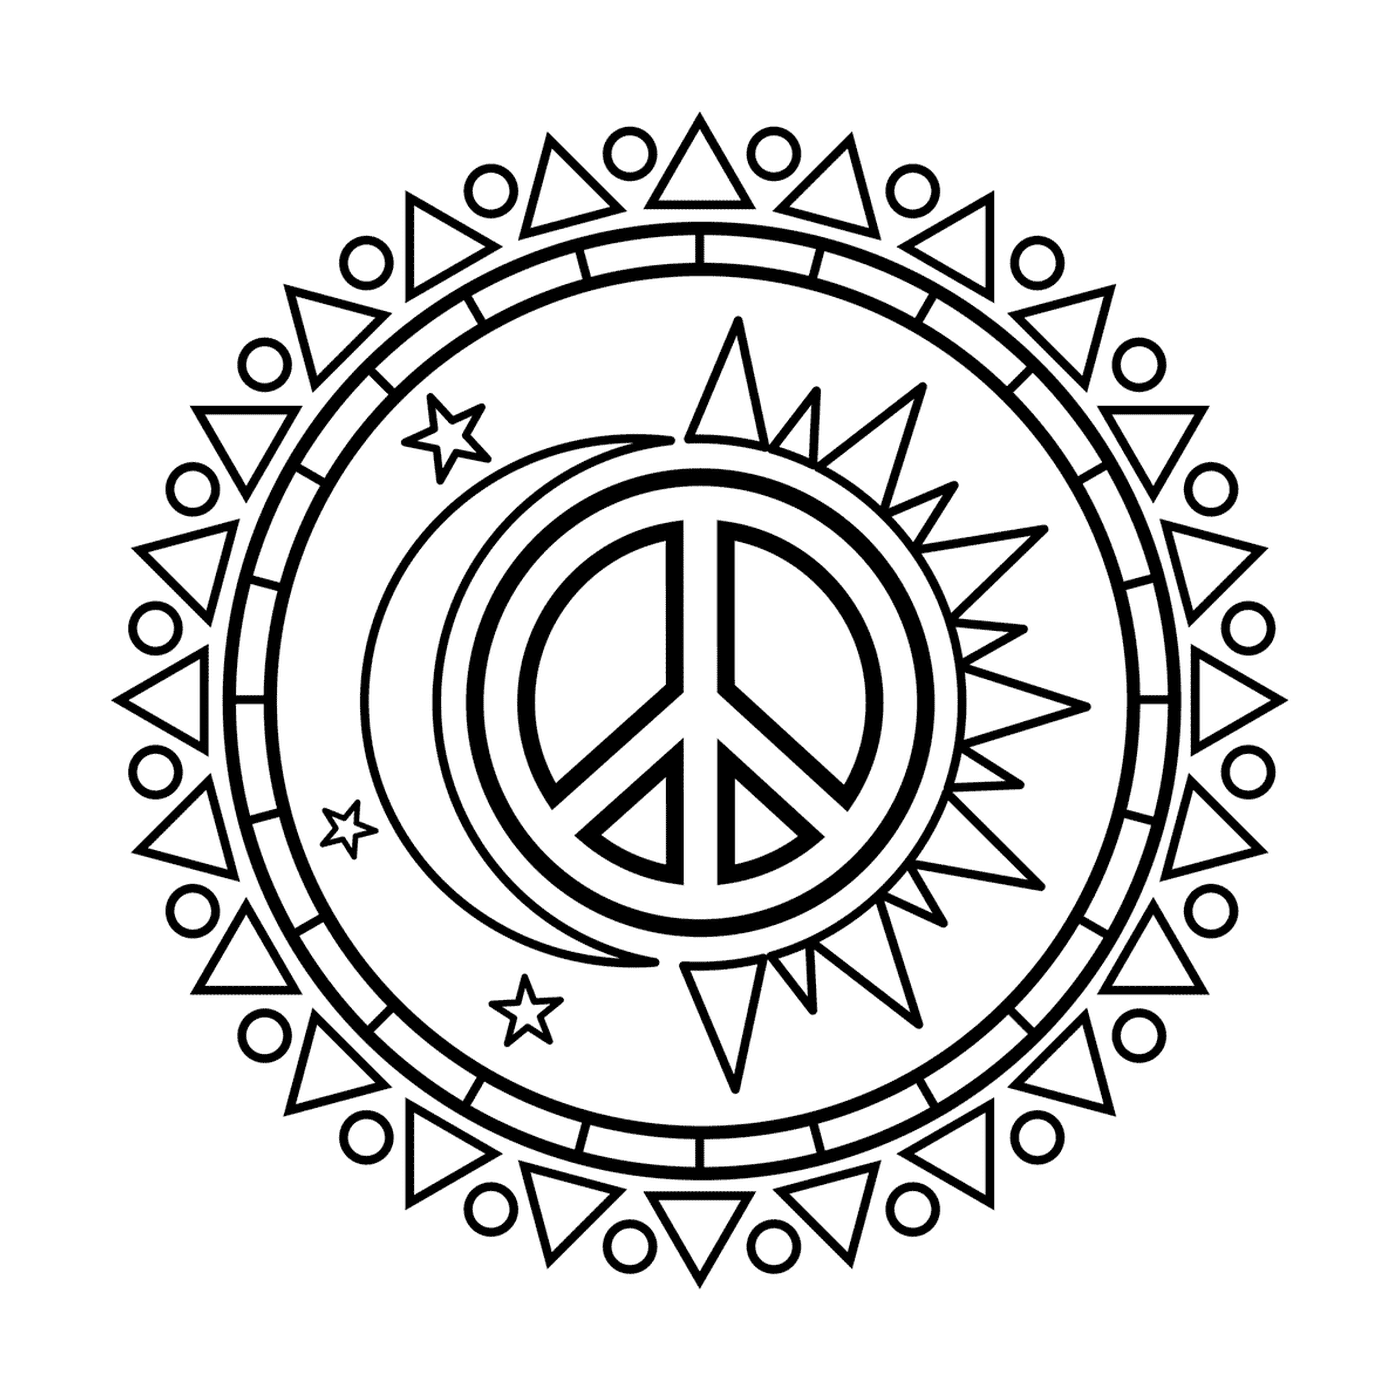  Sol y luna con símbolo de paz 